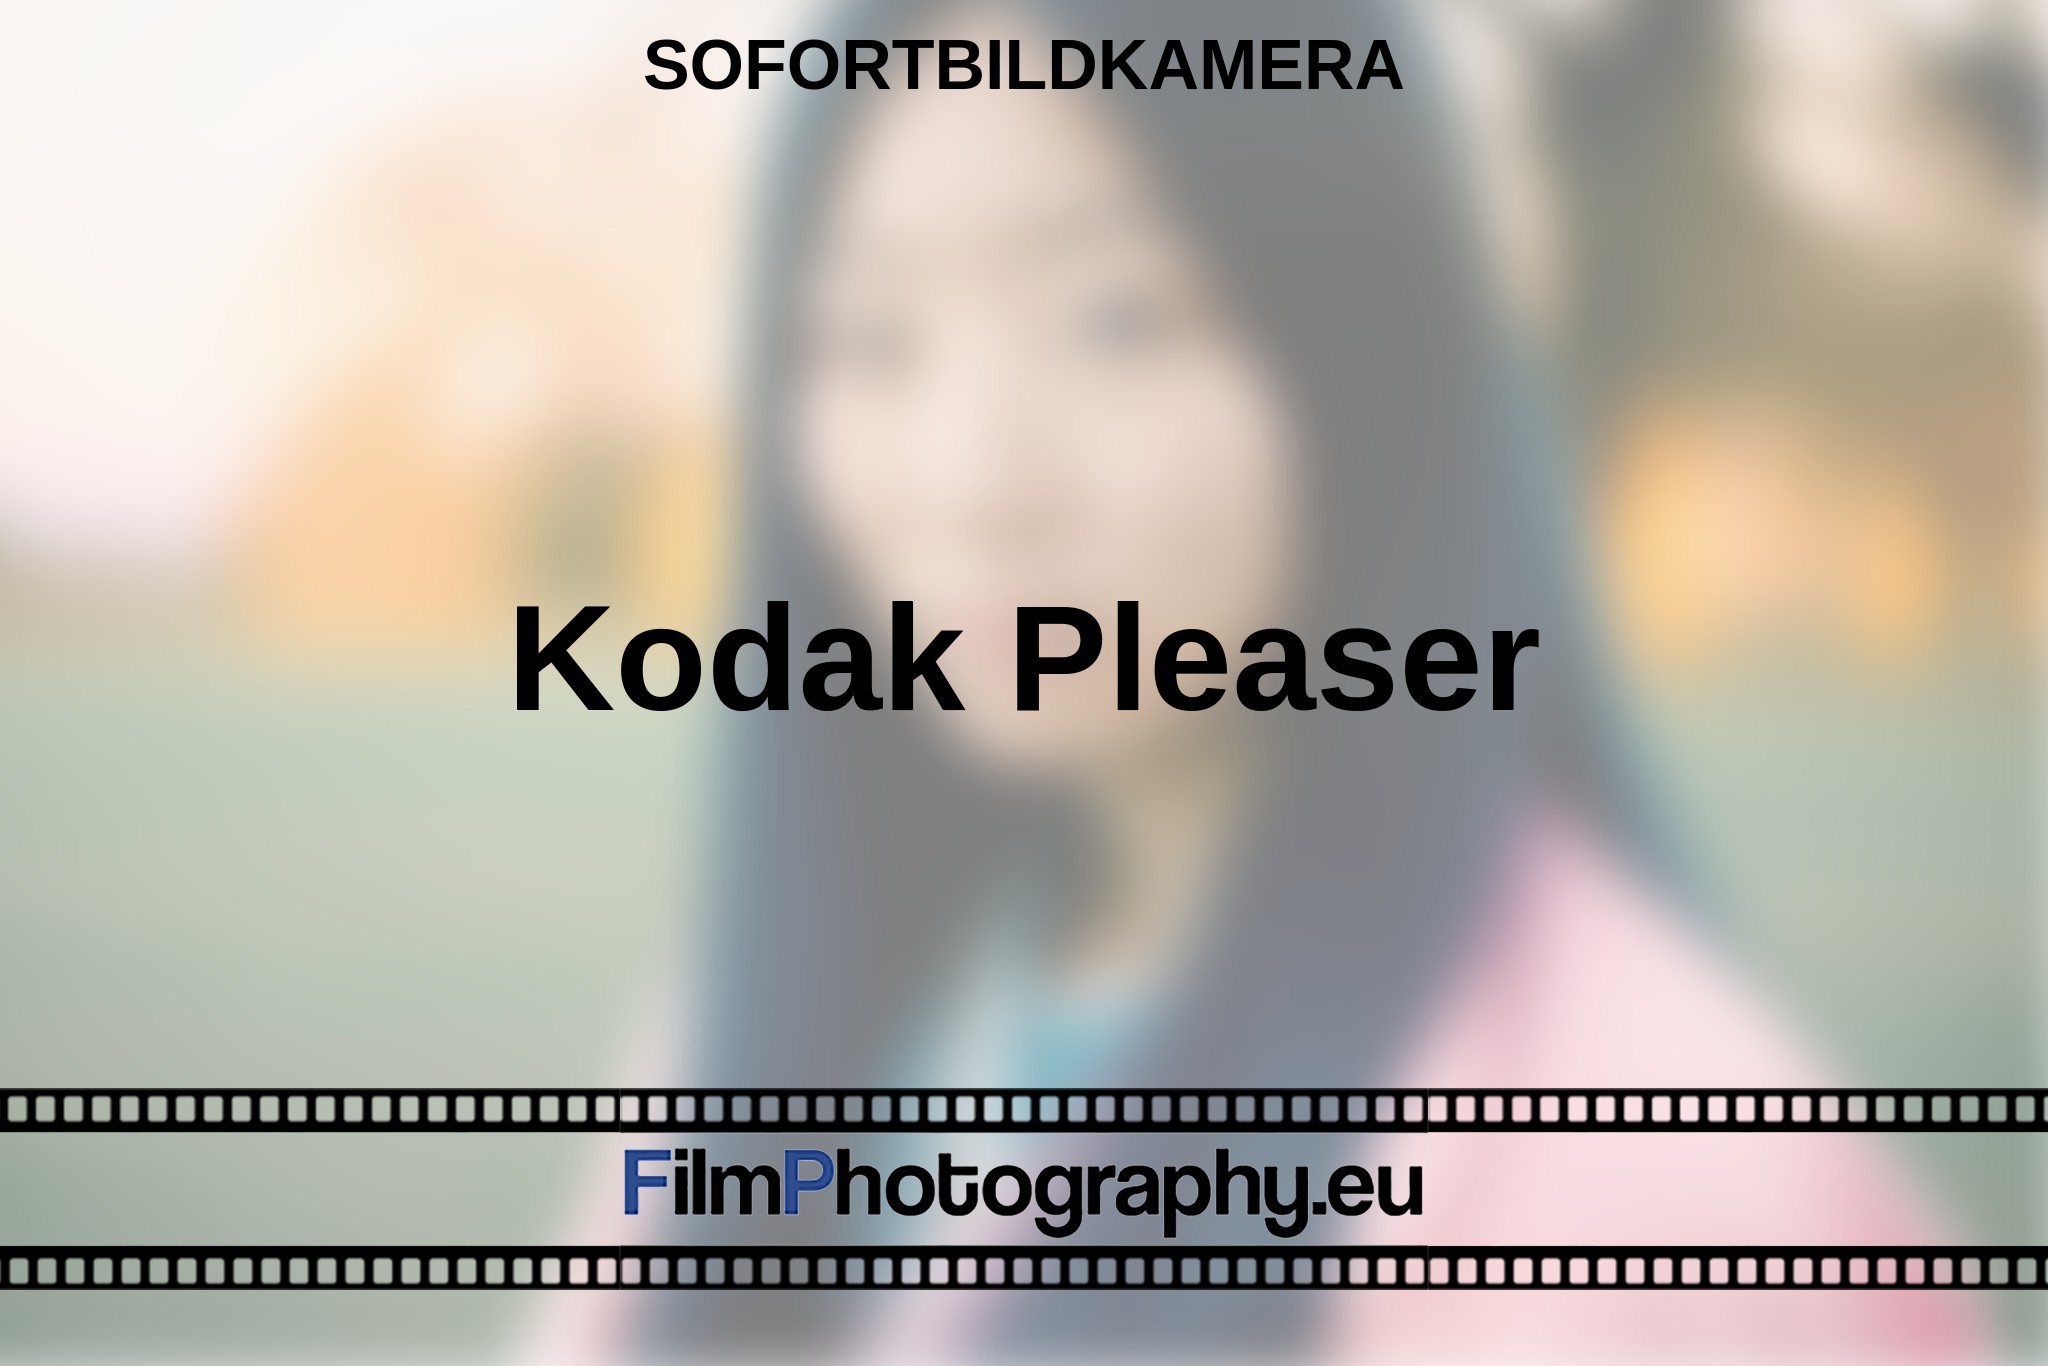 kodak-pleaser-sofortbildkamera-bnv.jpg